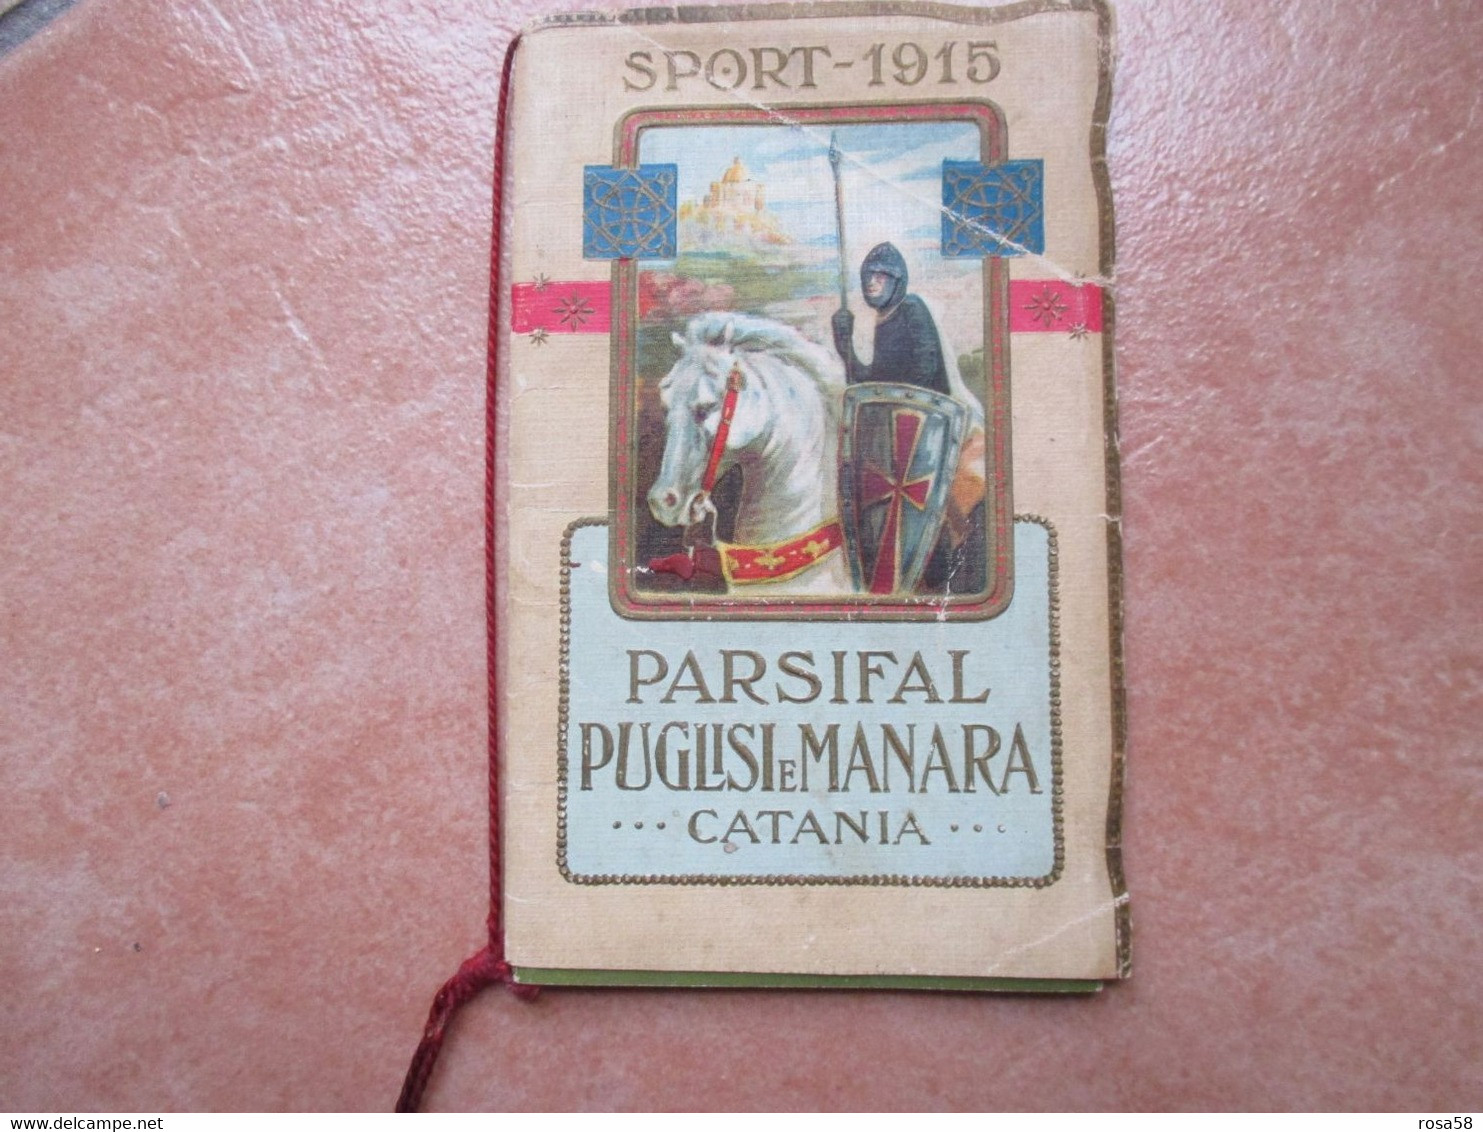 SPORT 1915 PARSIFAL Puglisi E Manara CATANIA Profumerie Igieniche - Formato Grande : 1901-20